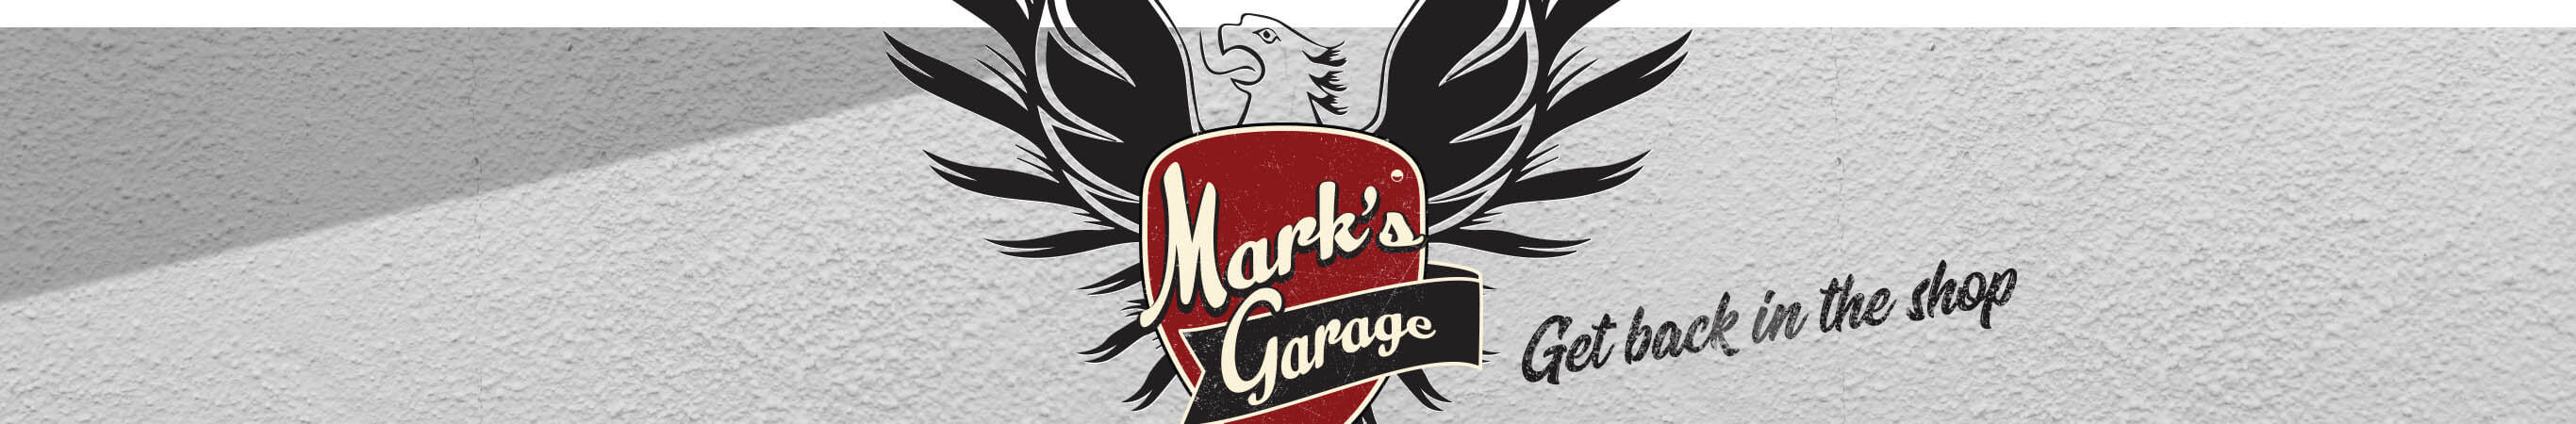 Mark's Garage. Get back in the shop.